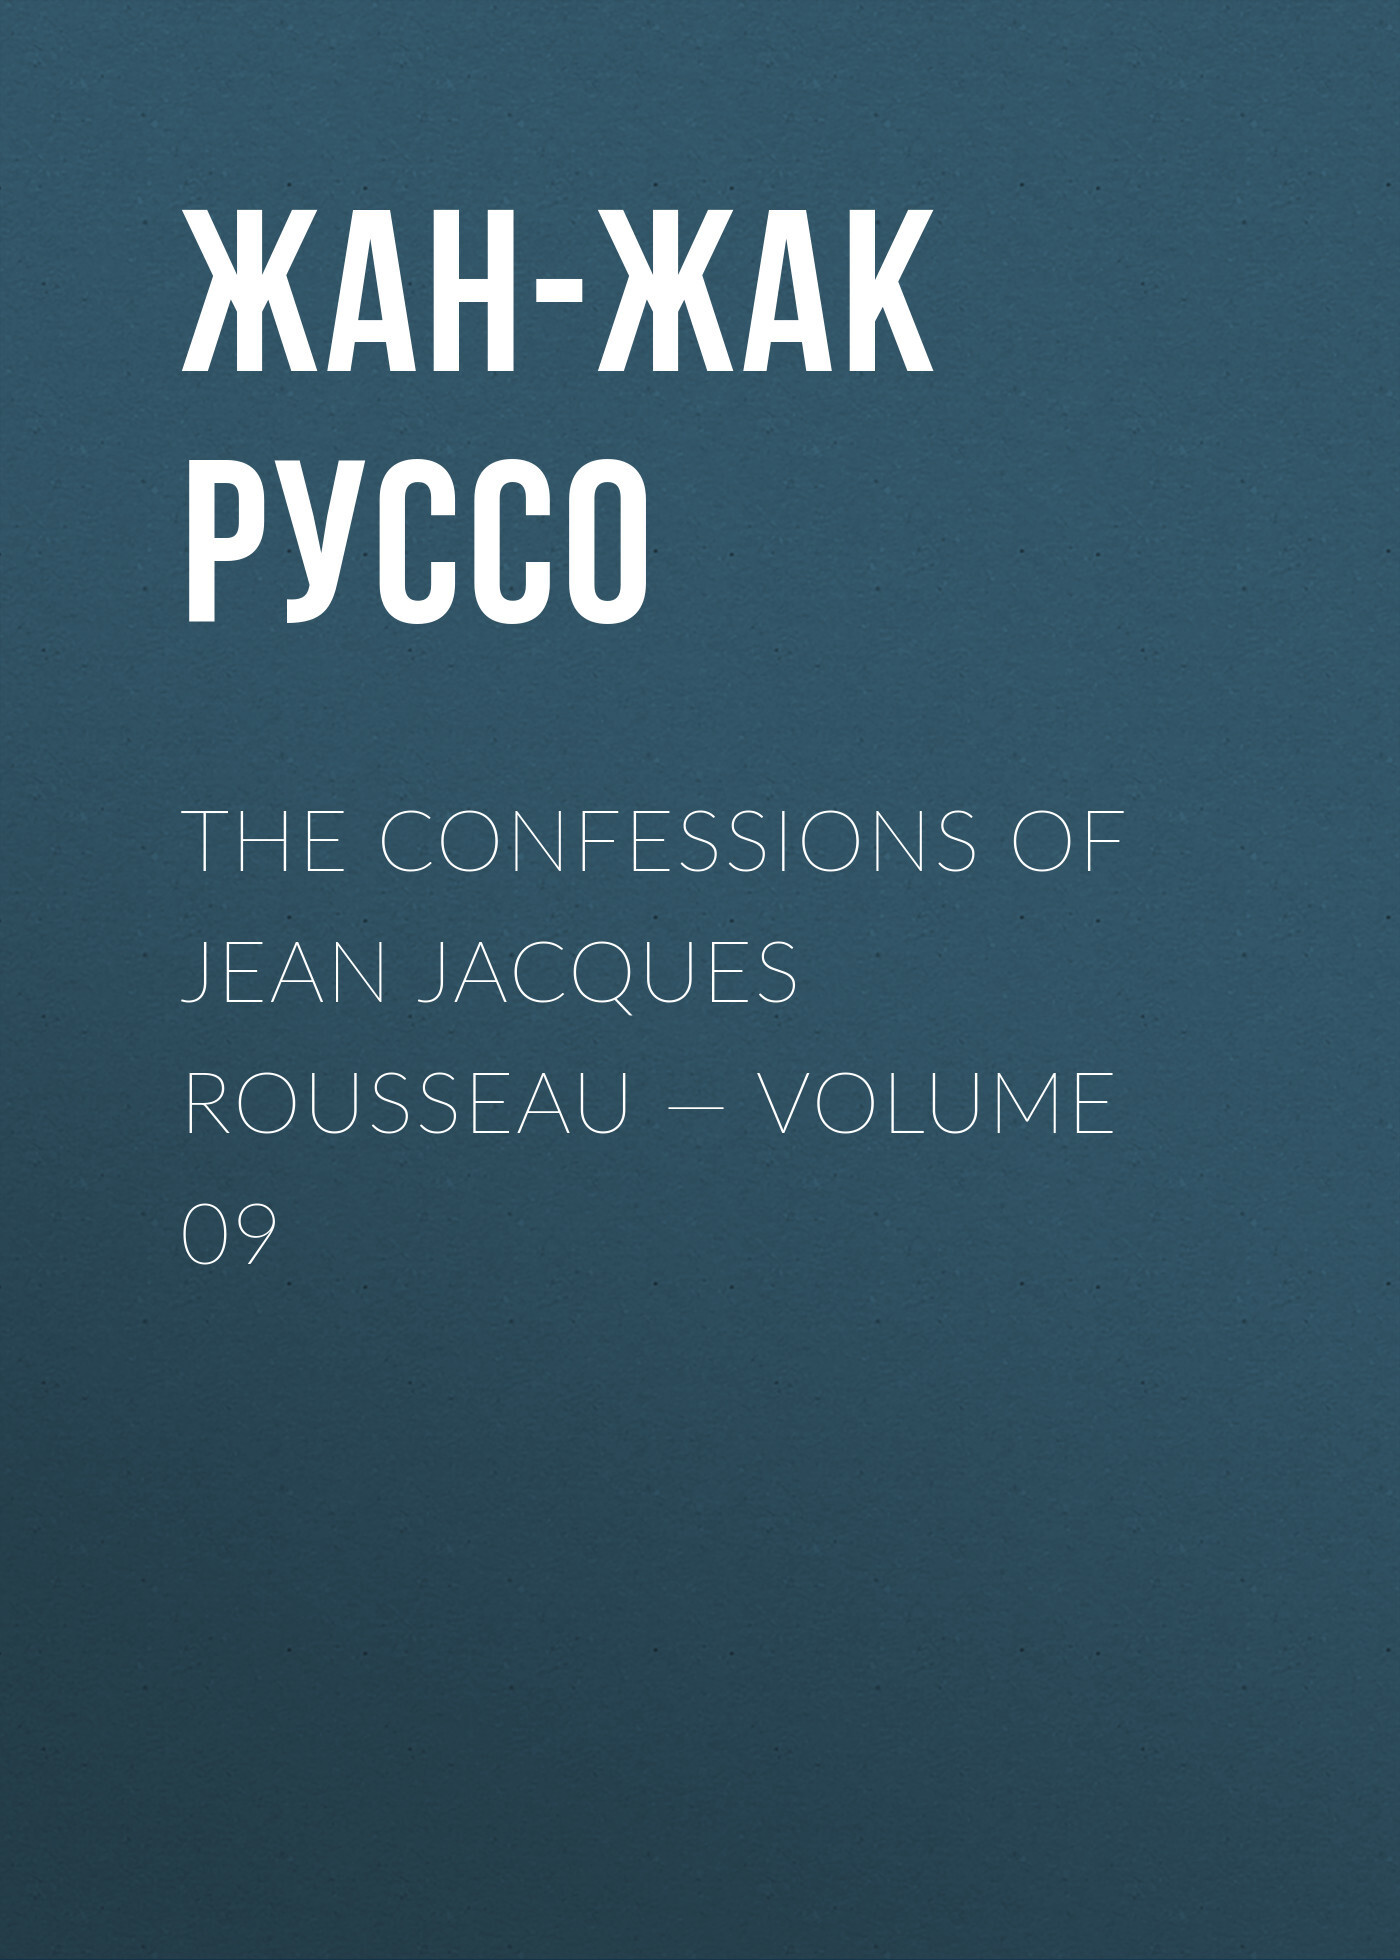 Книга The Confessions of Jean Jacques Rousseau – Volume 09 из серии , созданная Жан-Жак Руссо, может относится к жанру Биографии и Мемуары, Литература 18 века, Зарубежная старинная литература. Стоимость электронной книги The Confessions of Jean Jacques Rousseau – Volume 09 с идентификатором 34840150 составляет 0 руб.